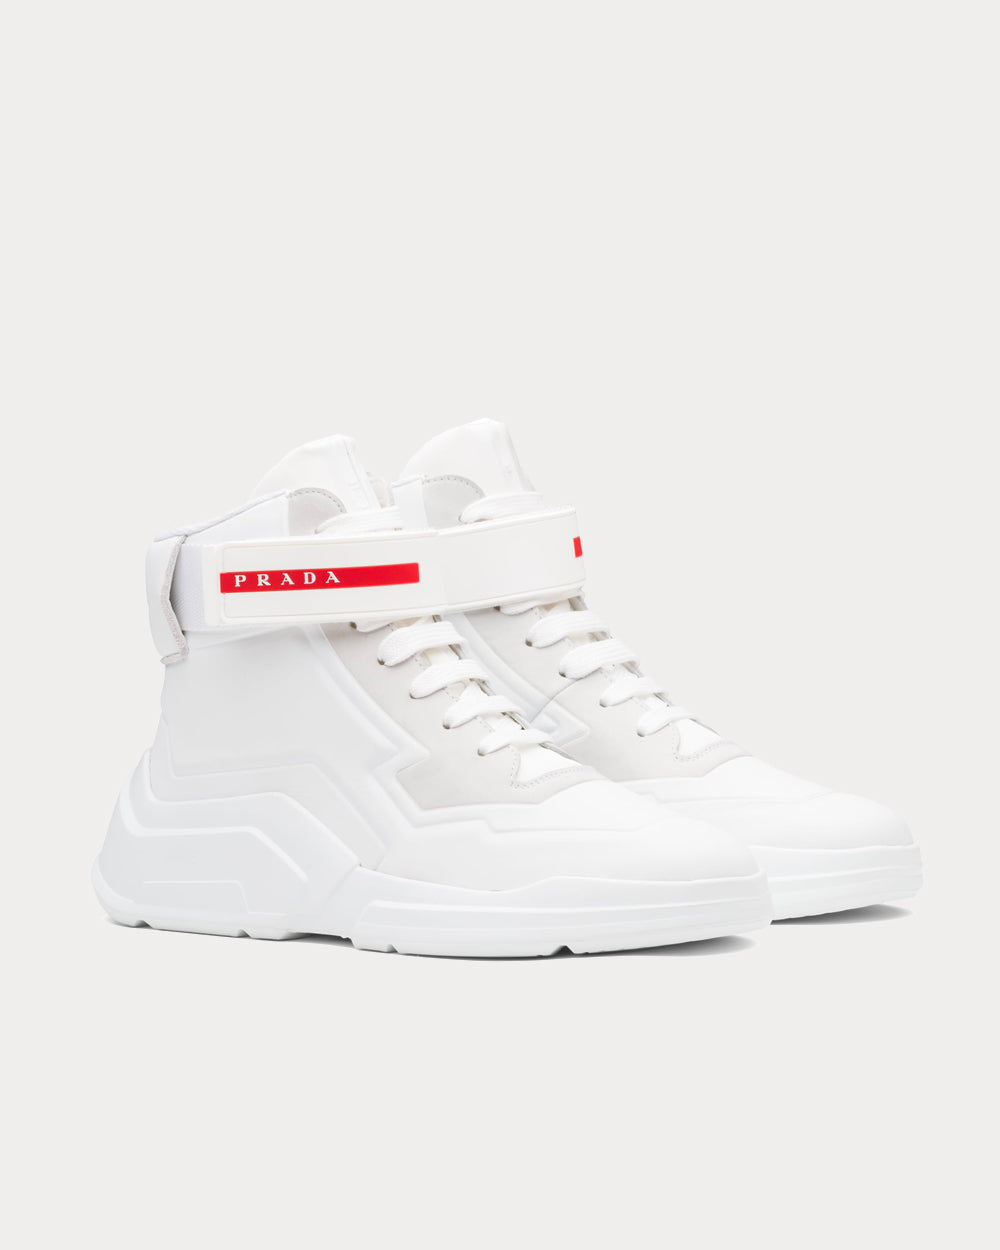 Prada - Polarius 19 LR White Mid High Top Sneakers